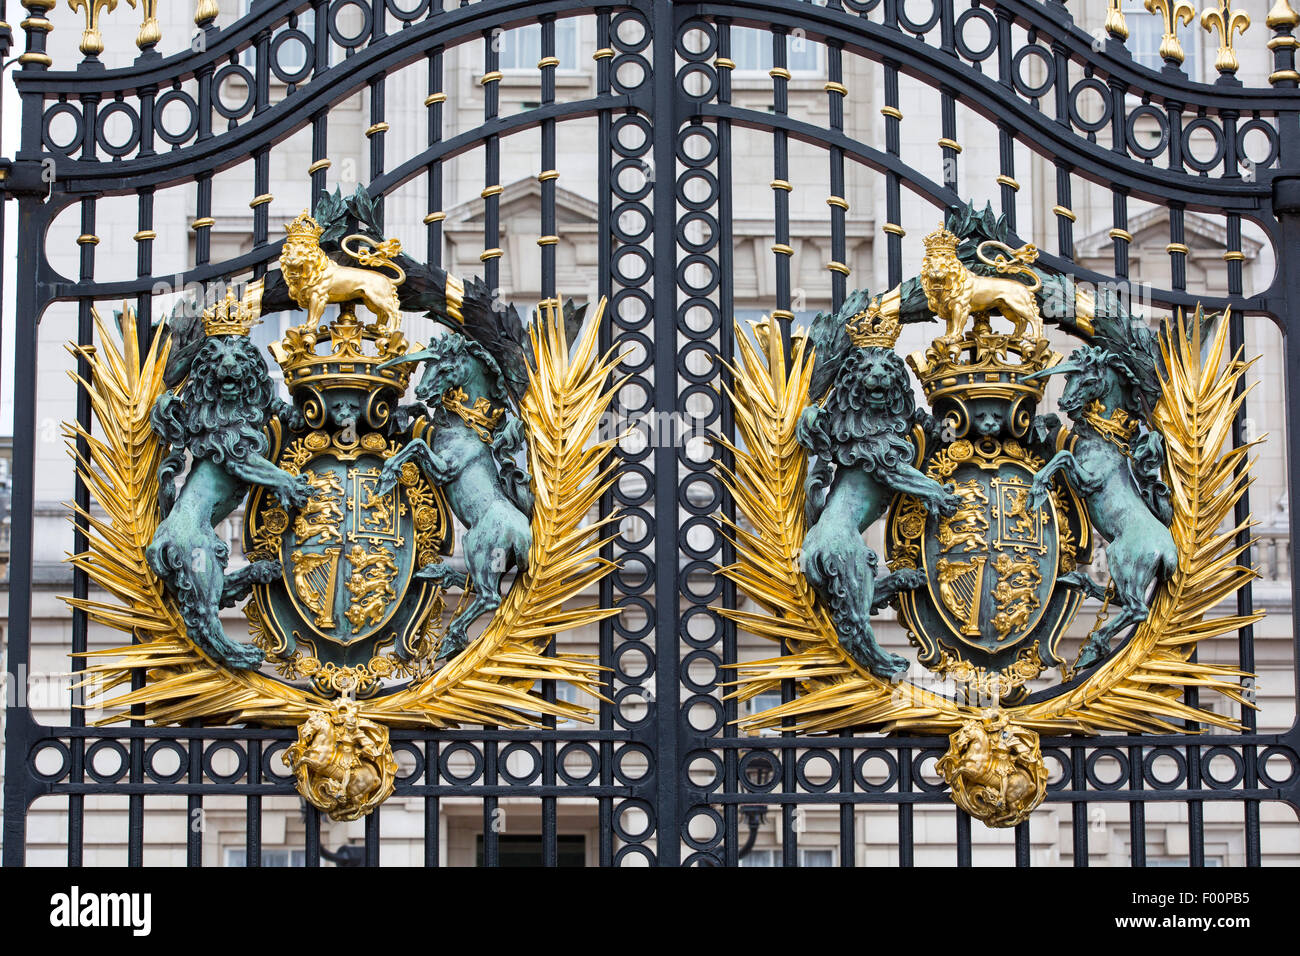 A gold leaf crest on the gates of Buckingham Palace, london, UK. Stock Photo